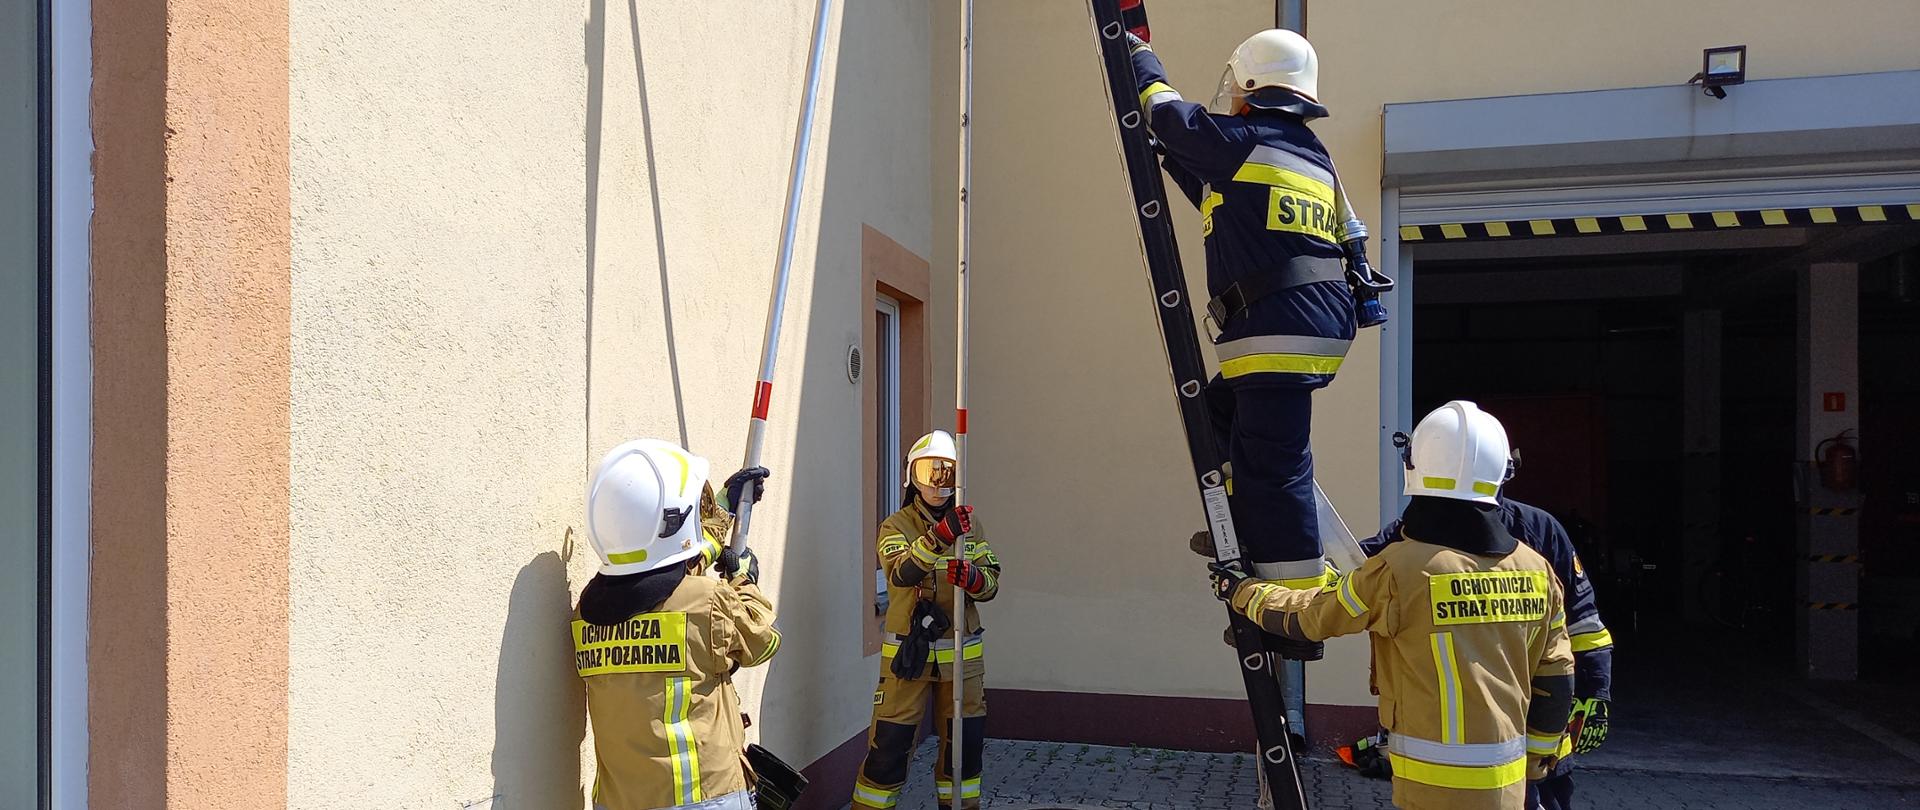 Pięcioro strażaków OSP podczas wykonywania zadania związanego z wprowadzeniem linii wężowej na strażacką drabinę. Dwóch strażaków zabezpiecza drabinę trzymając podpory, kolejnych dwóch zabezpiecza drabinę i jeden strażak wchodzi na drabinę z linią wężową.